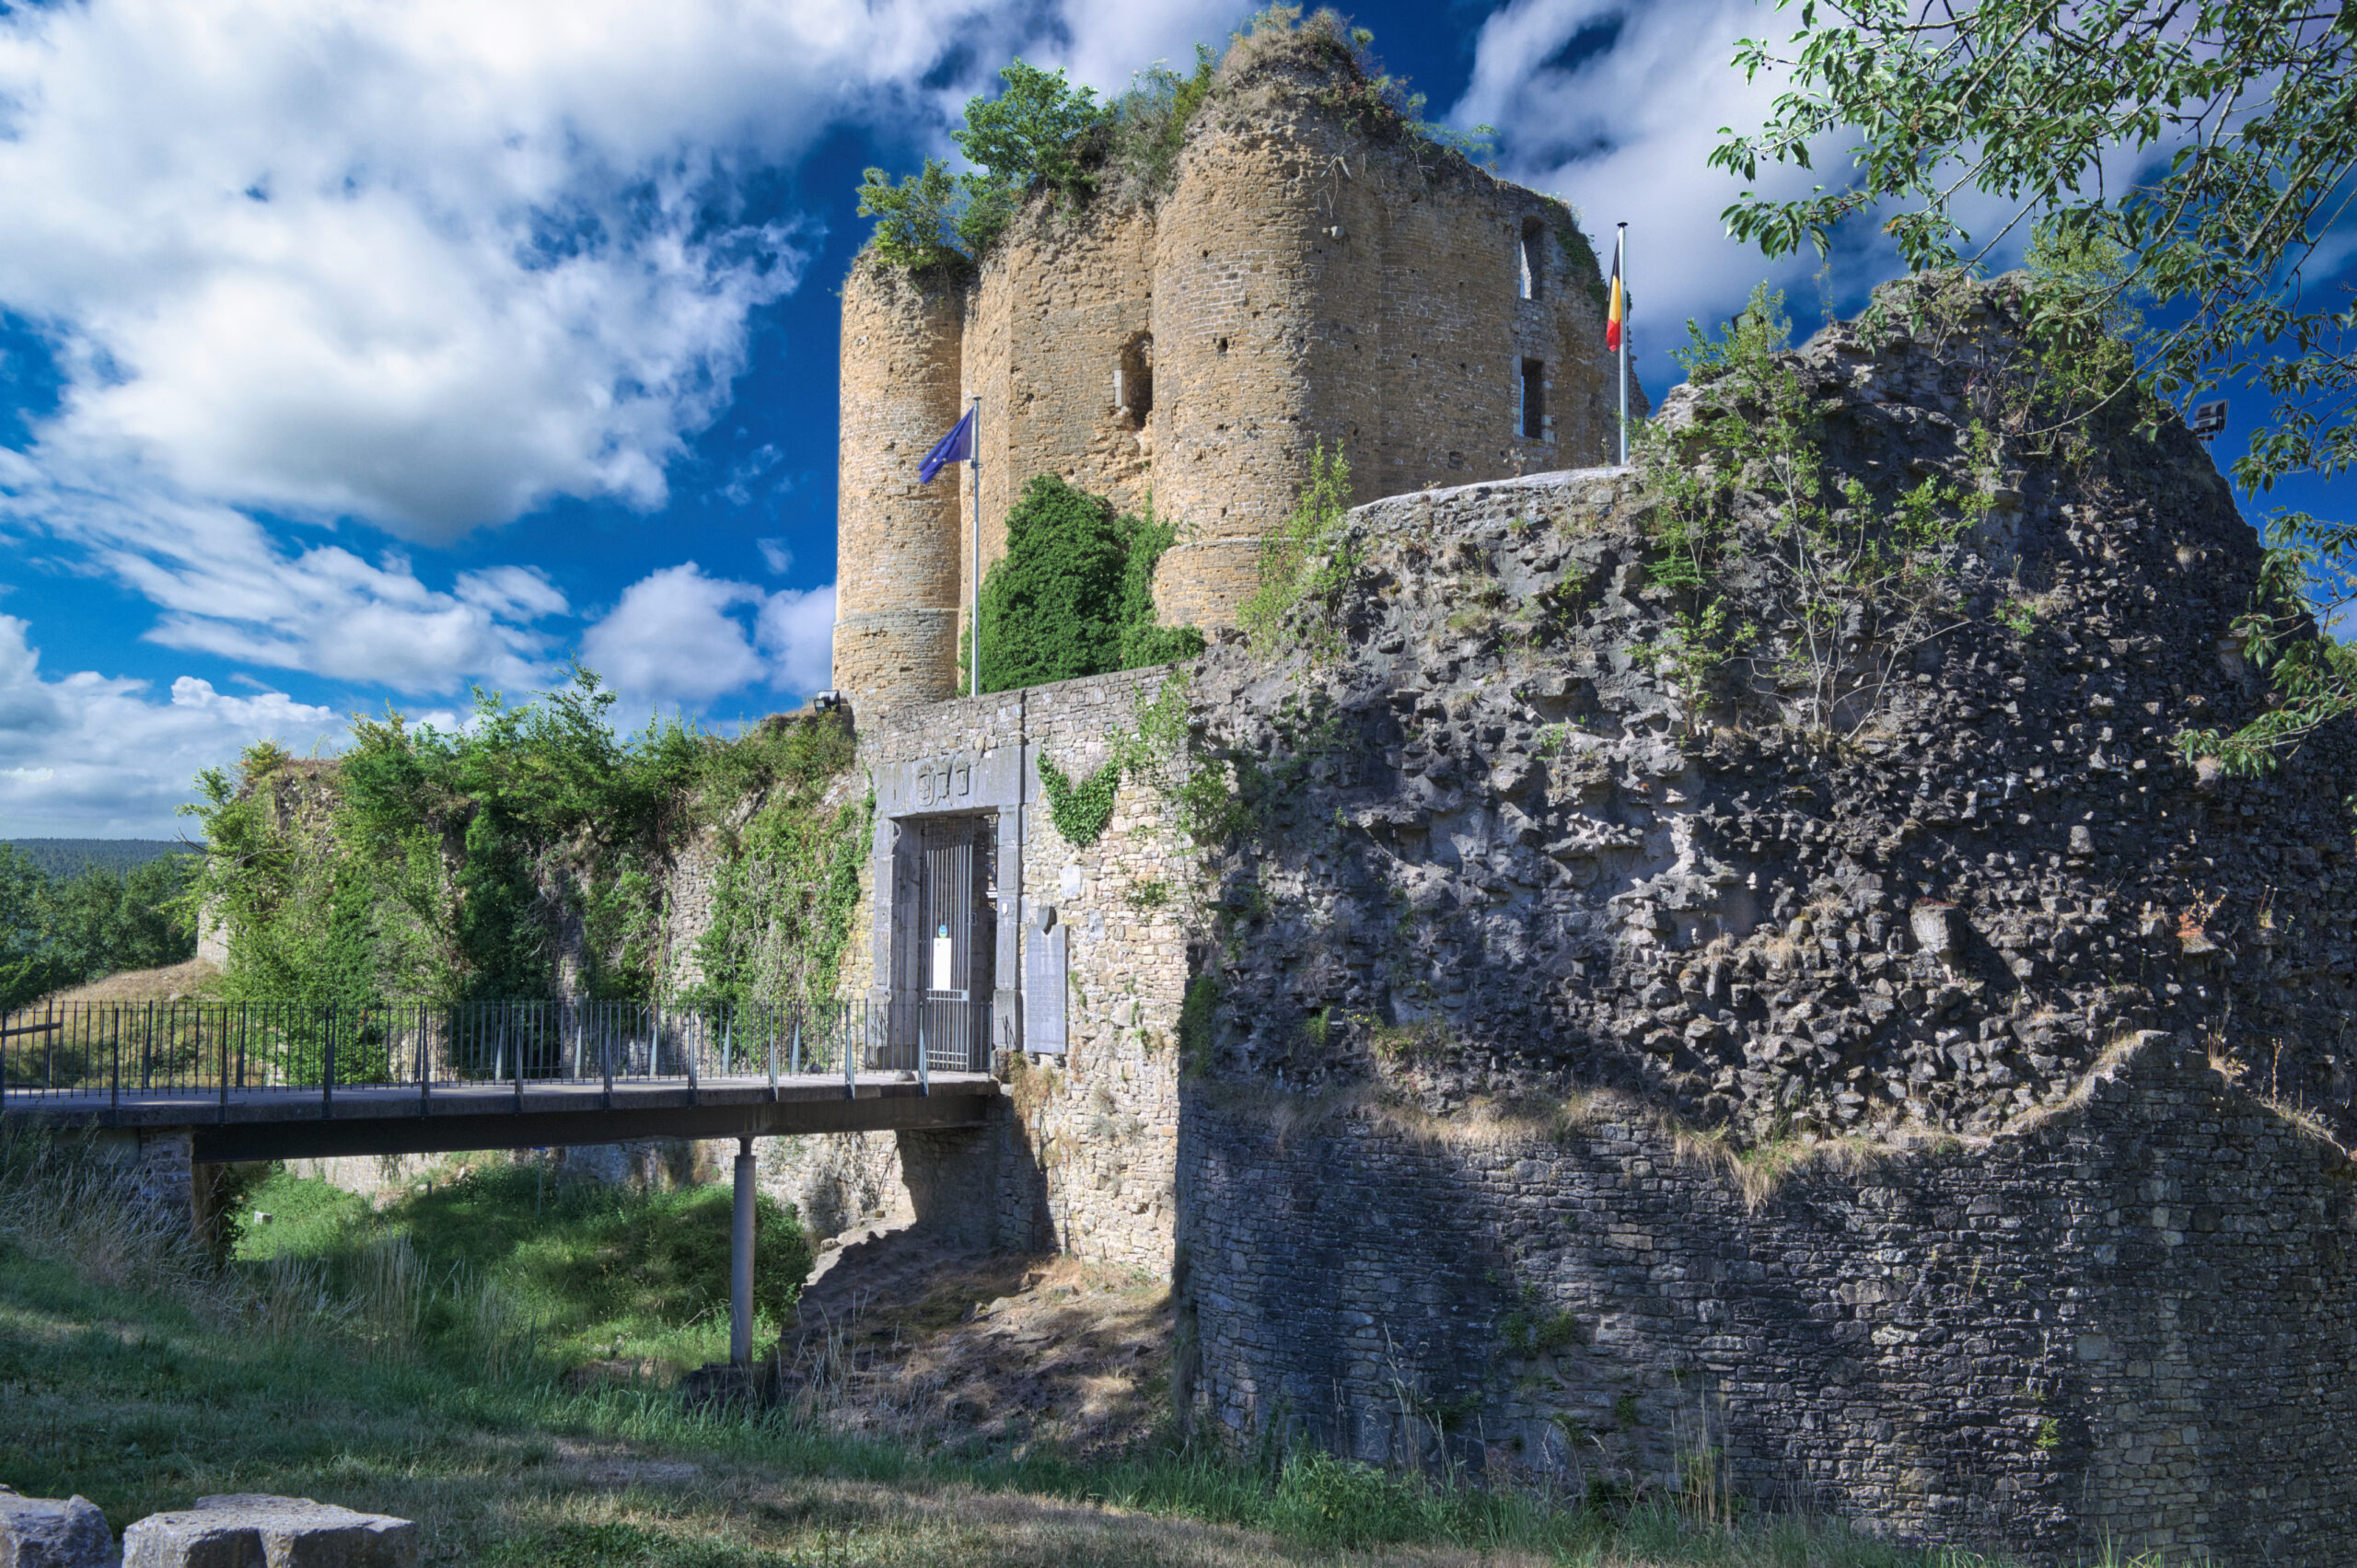 Venez découvrir le Chateau de Franchimont, situé à proximité du pré des oréades